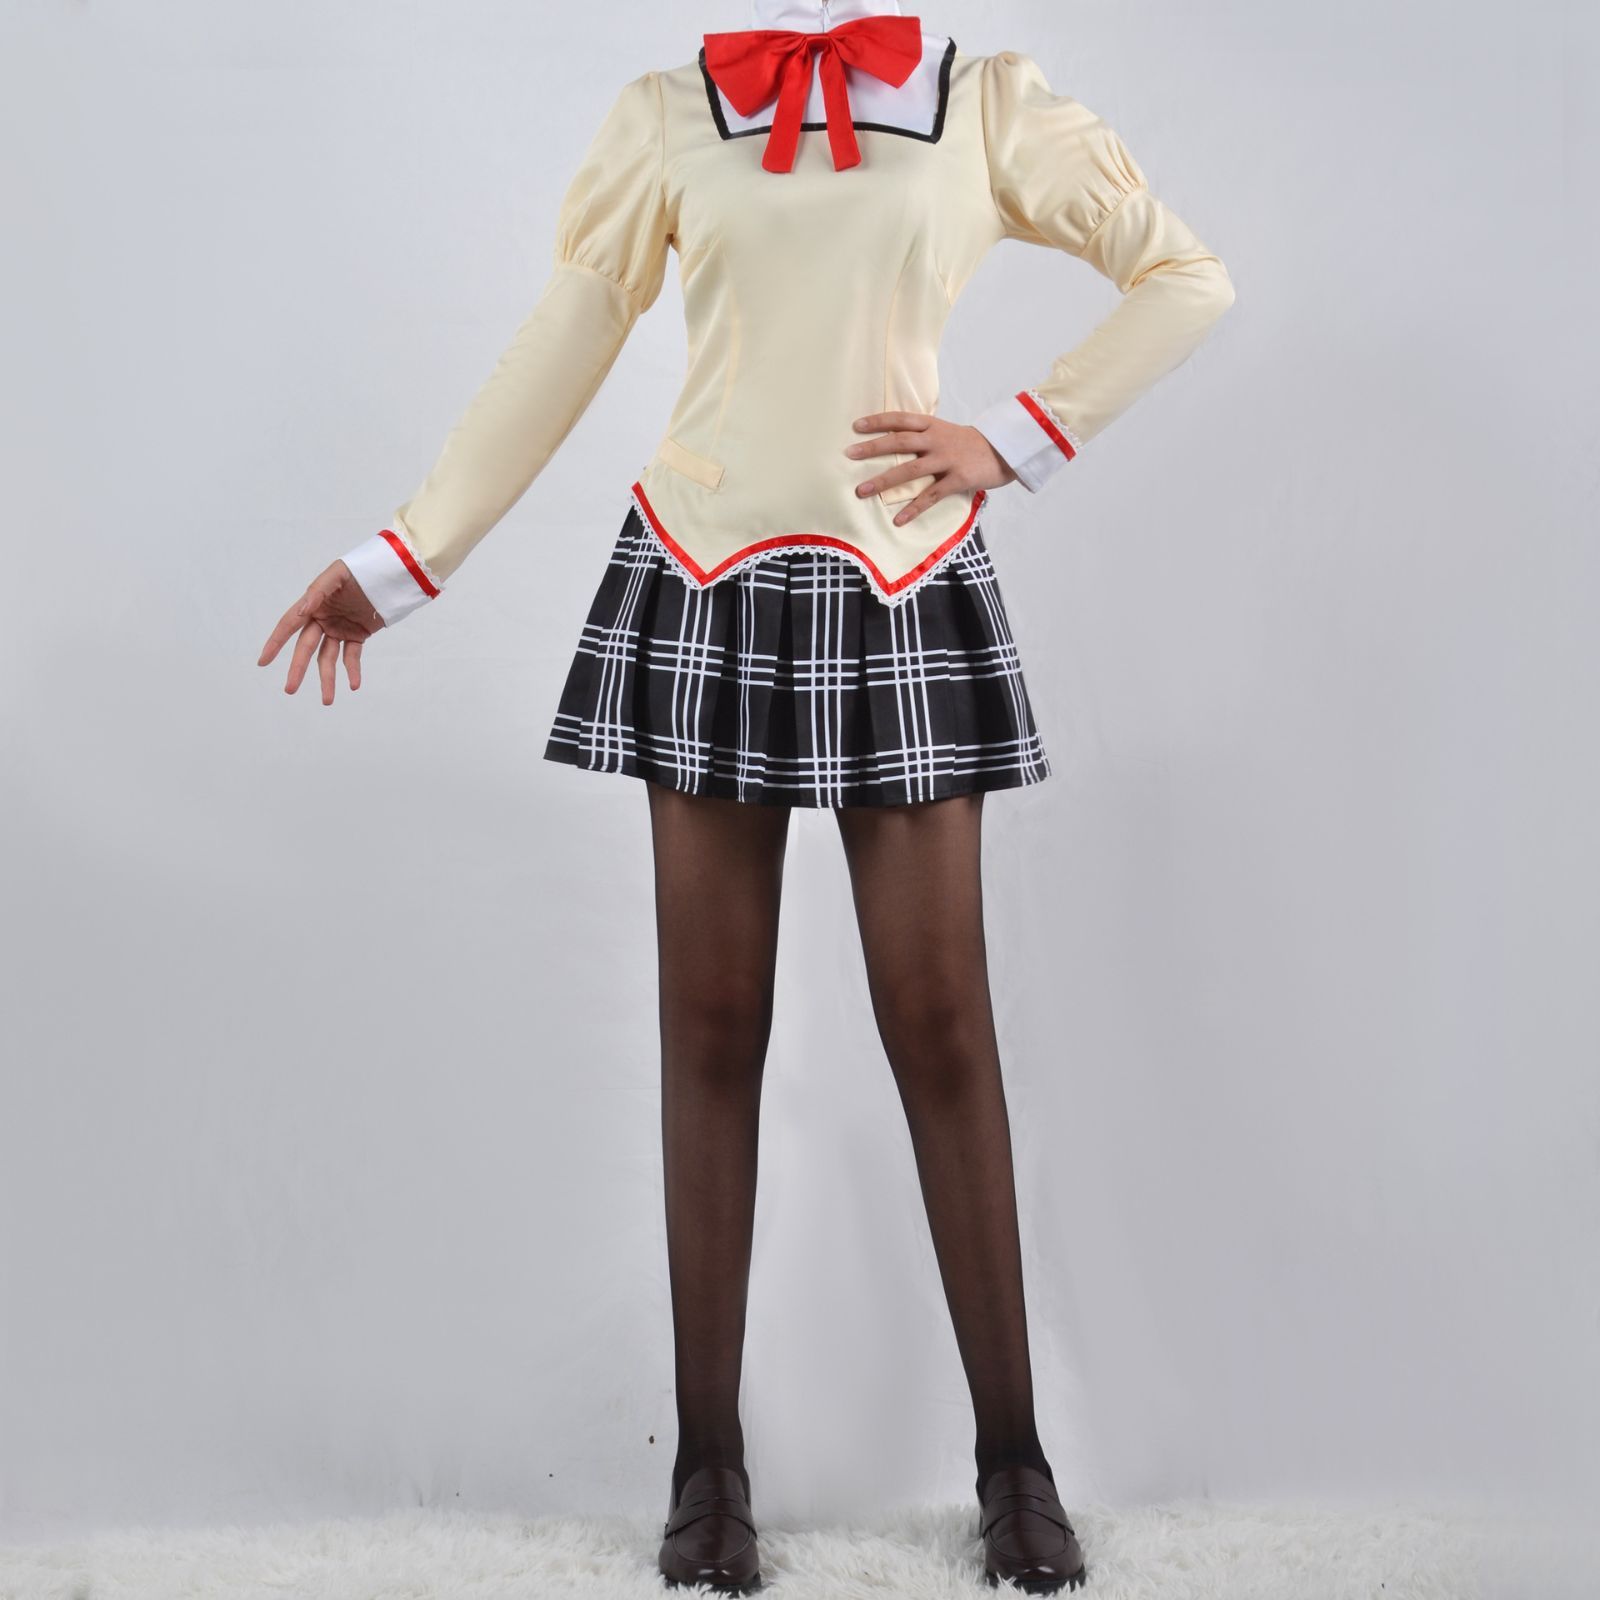 魔法少女まどか☆マギカ コスプレ衣装 制服 見滝原中学校 女子制服 鹿 